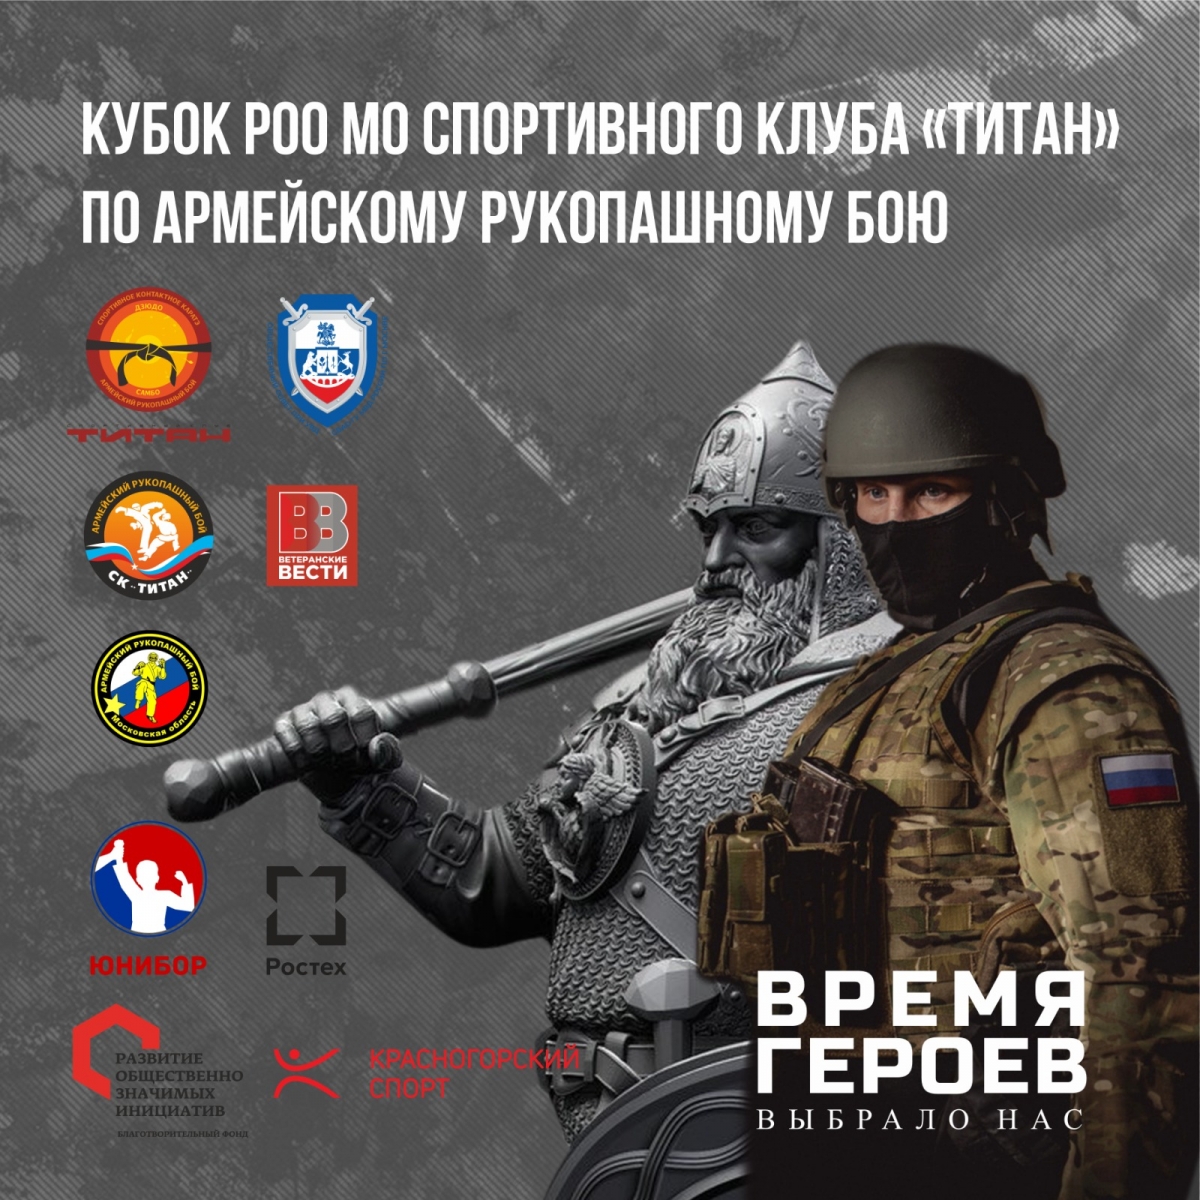 Соревнования по армейскому рукопашному бою прошли в Красногорске